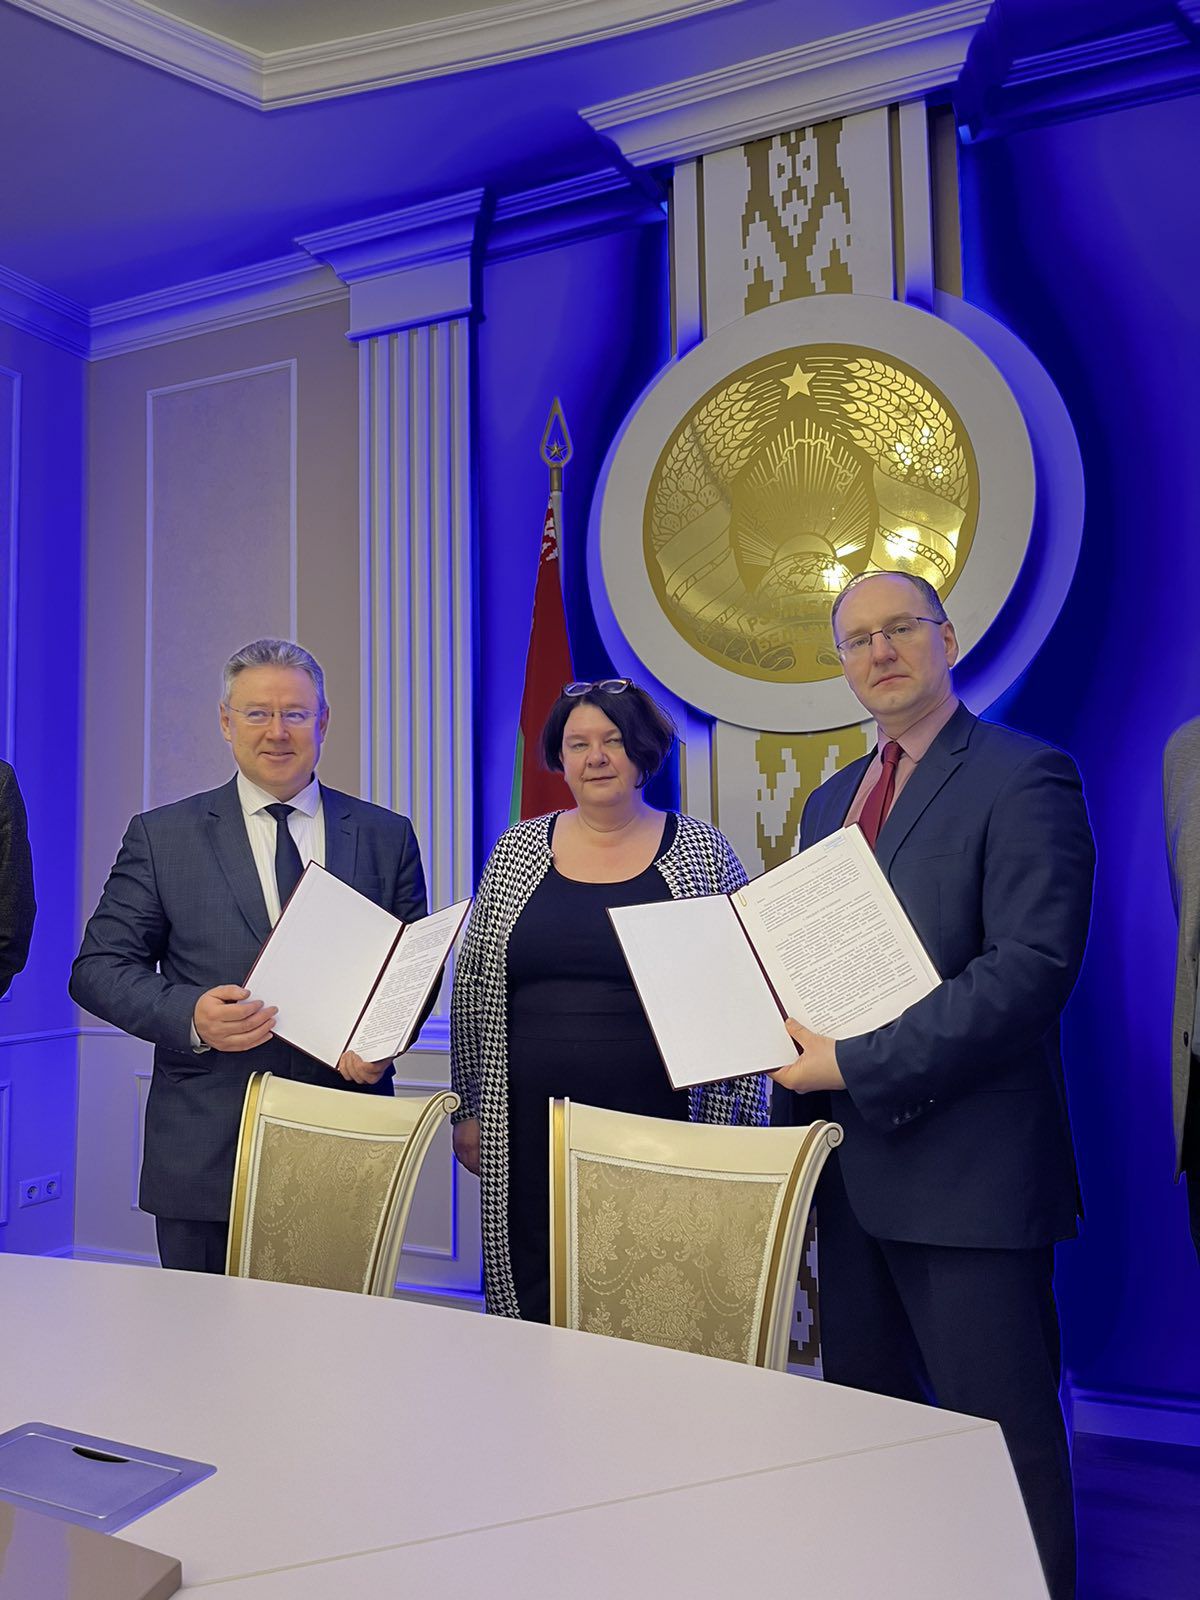 ОАО «ЦНИИТУ» и РУП «Центр цифрового развития» подписали партнерское соглашение о сотрудничестве